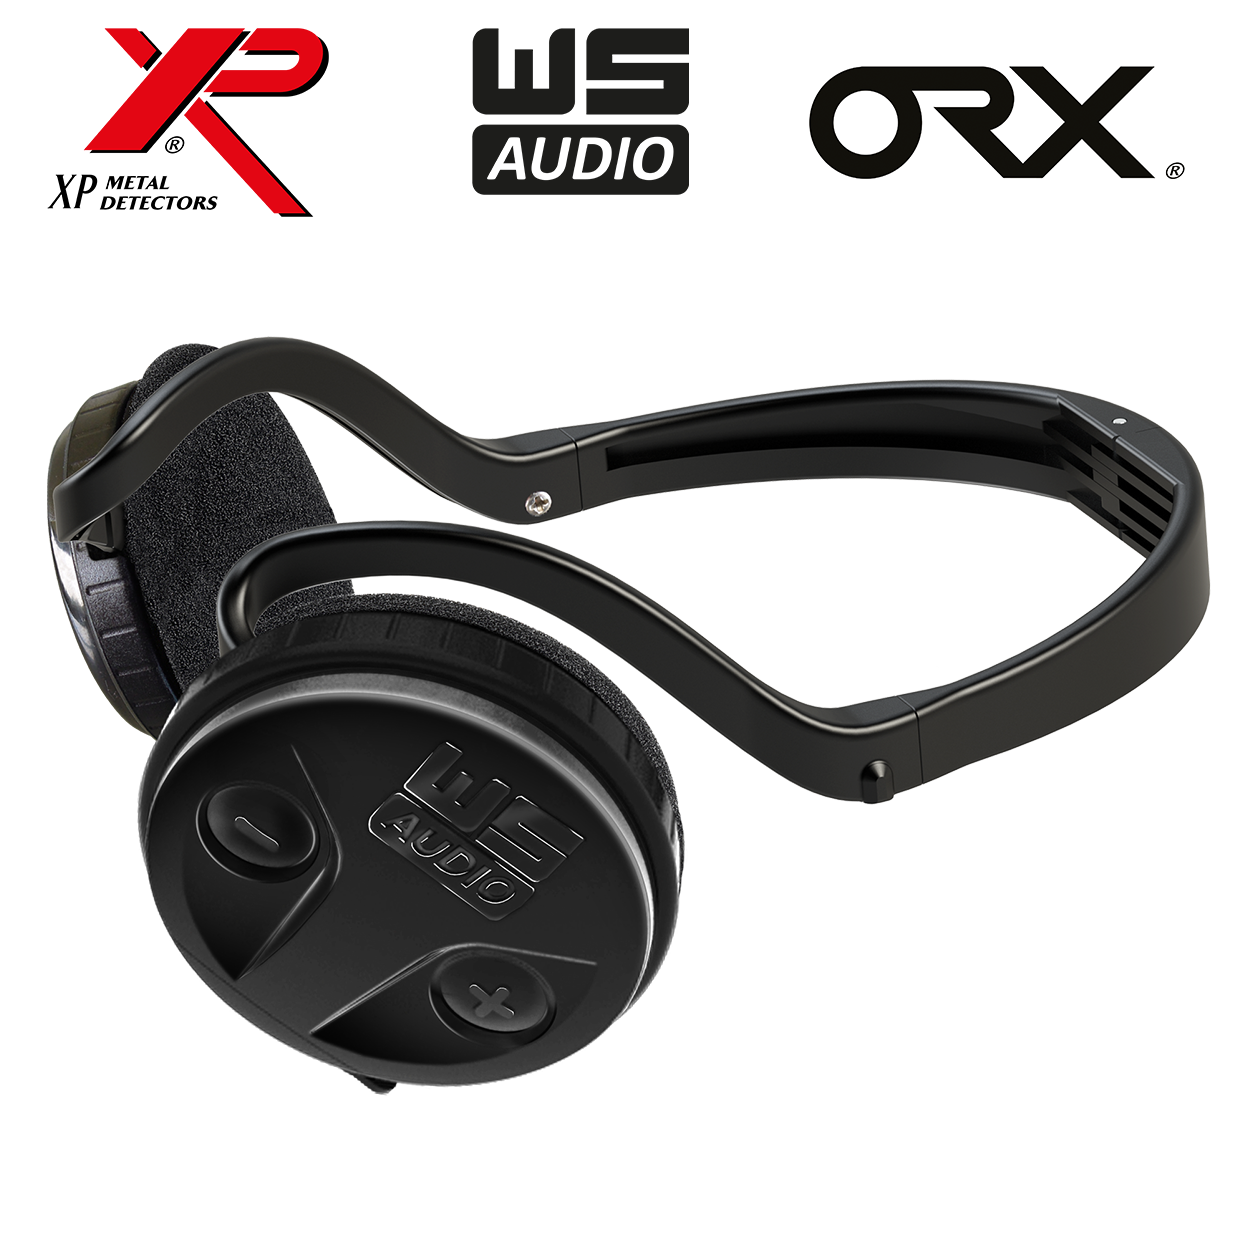 ORX WSA Metalldetektor XP X35 RC 22